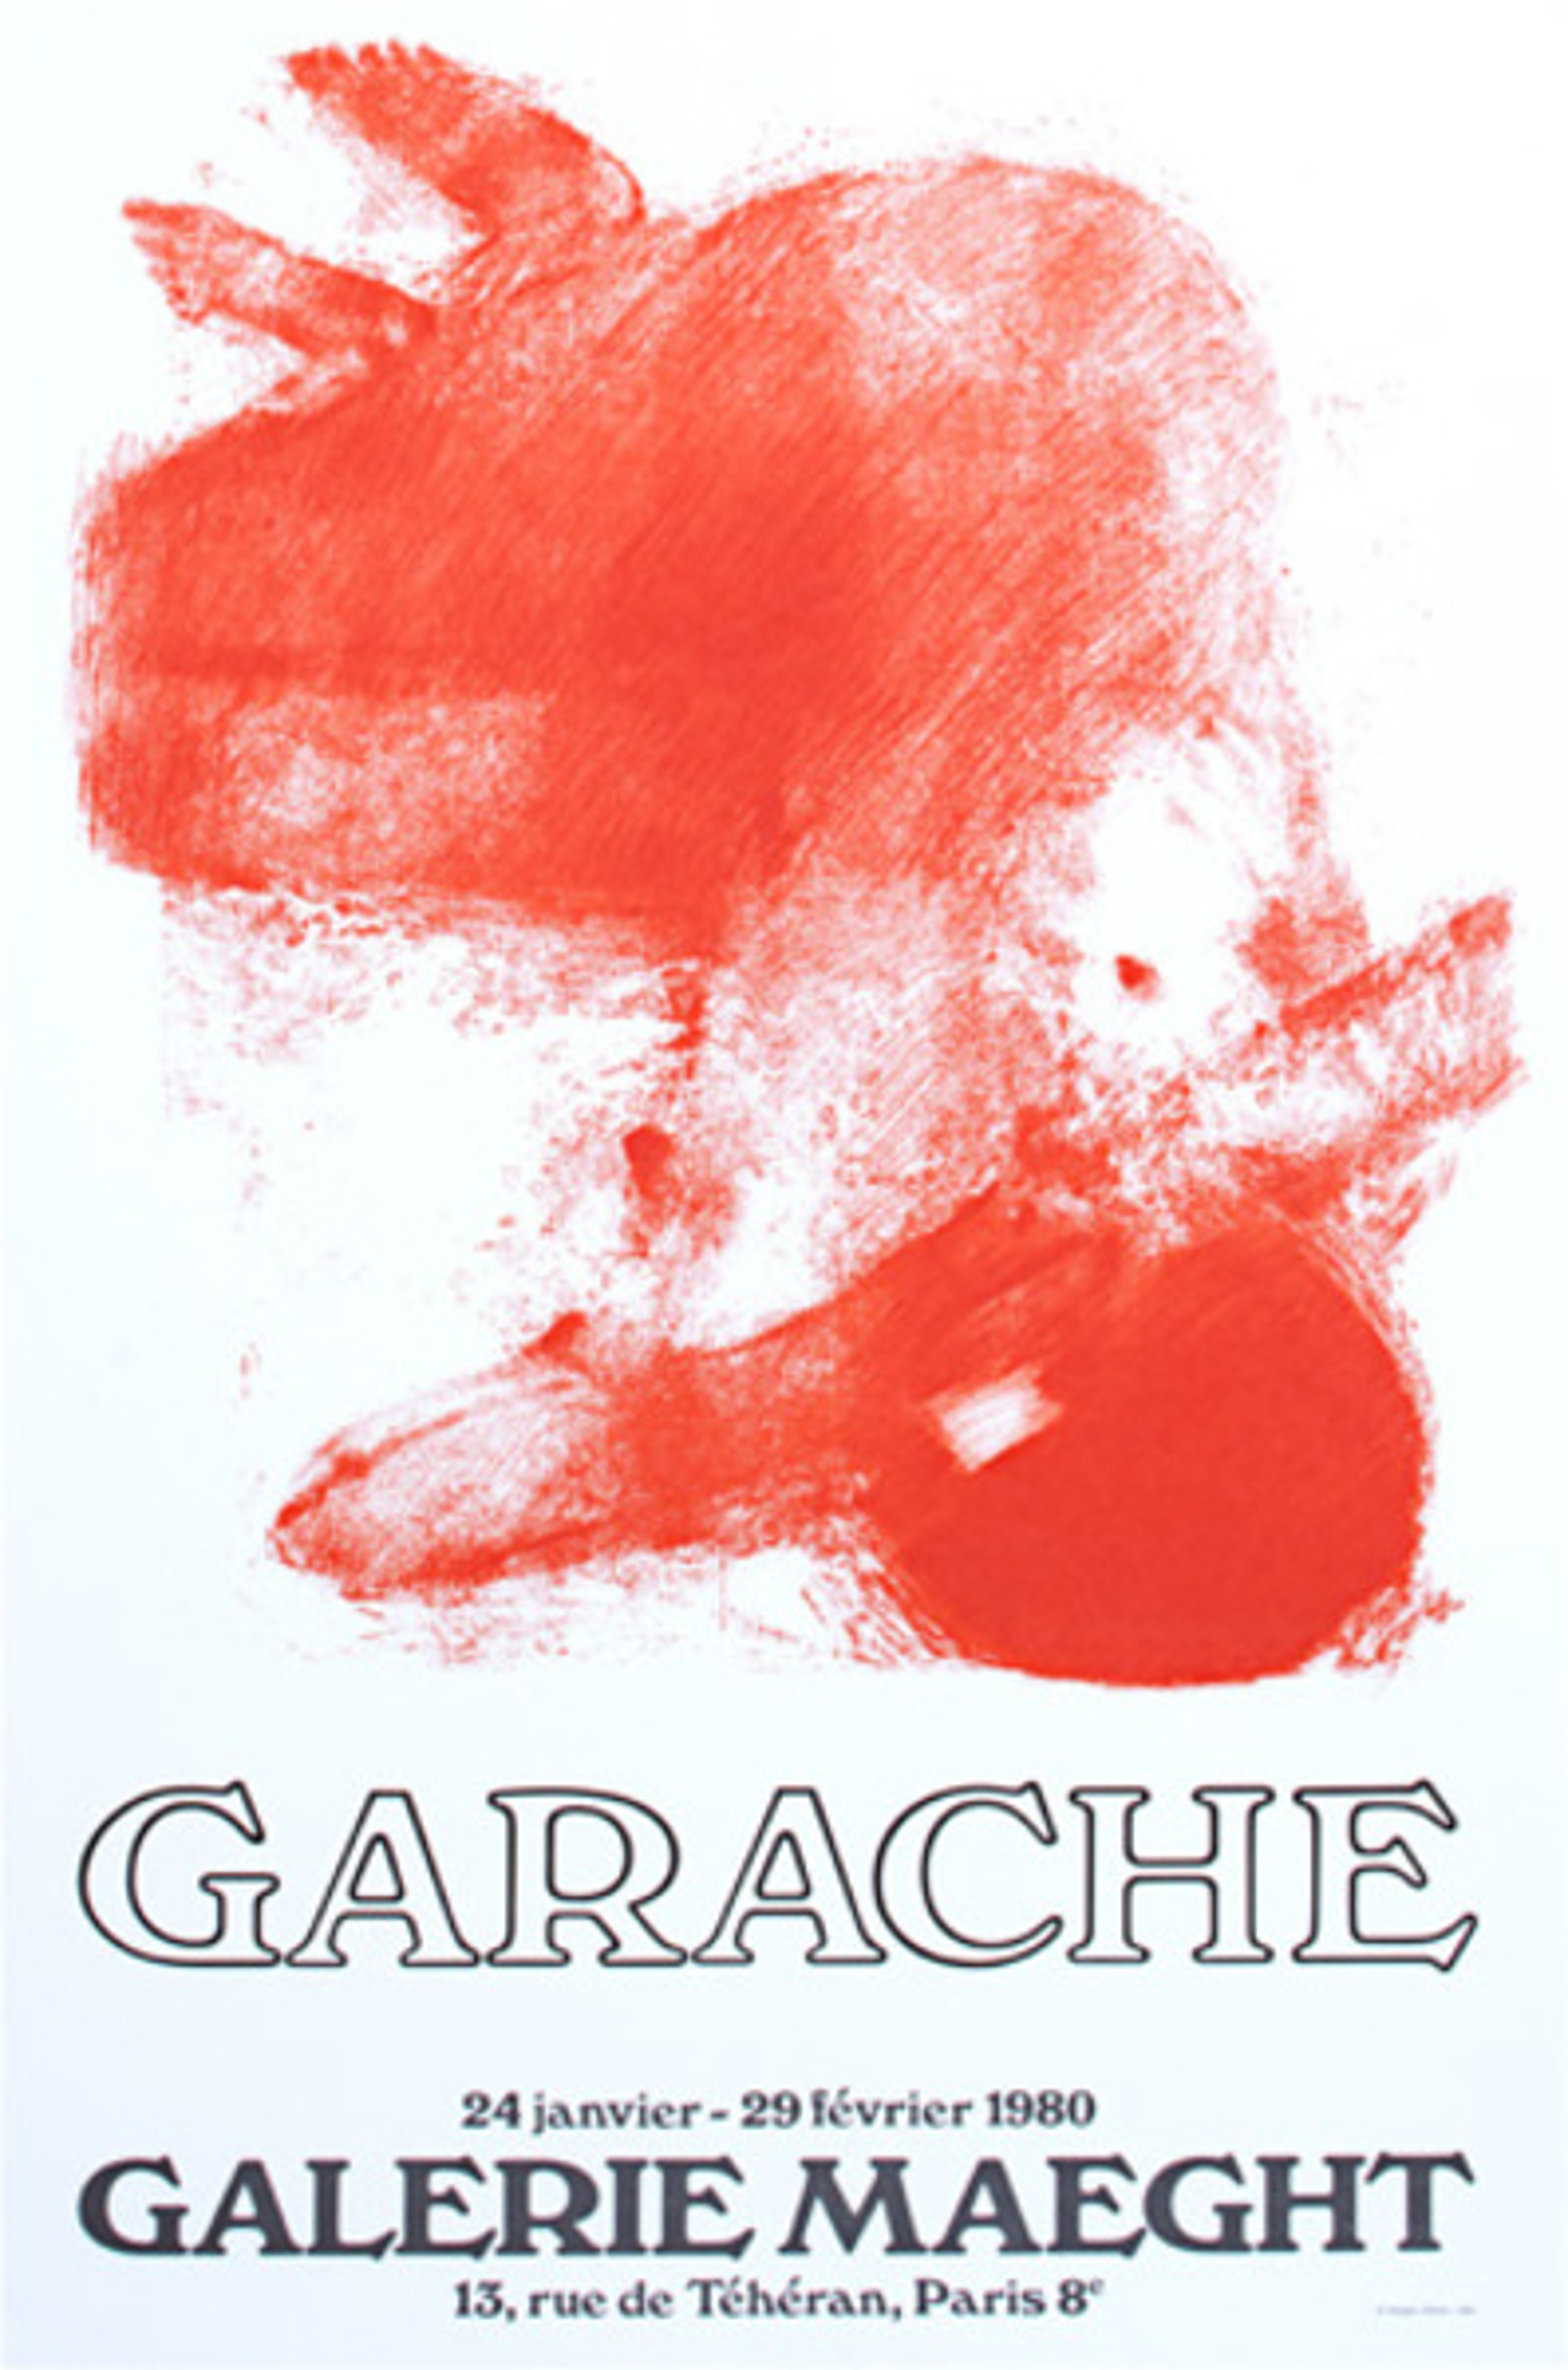 Galerie Maeght by Claude Garache